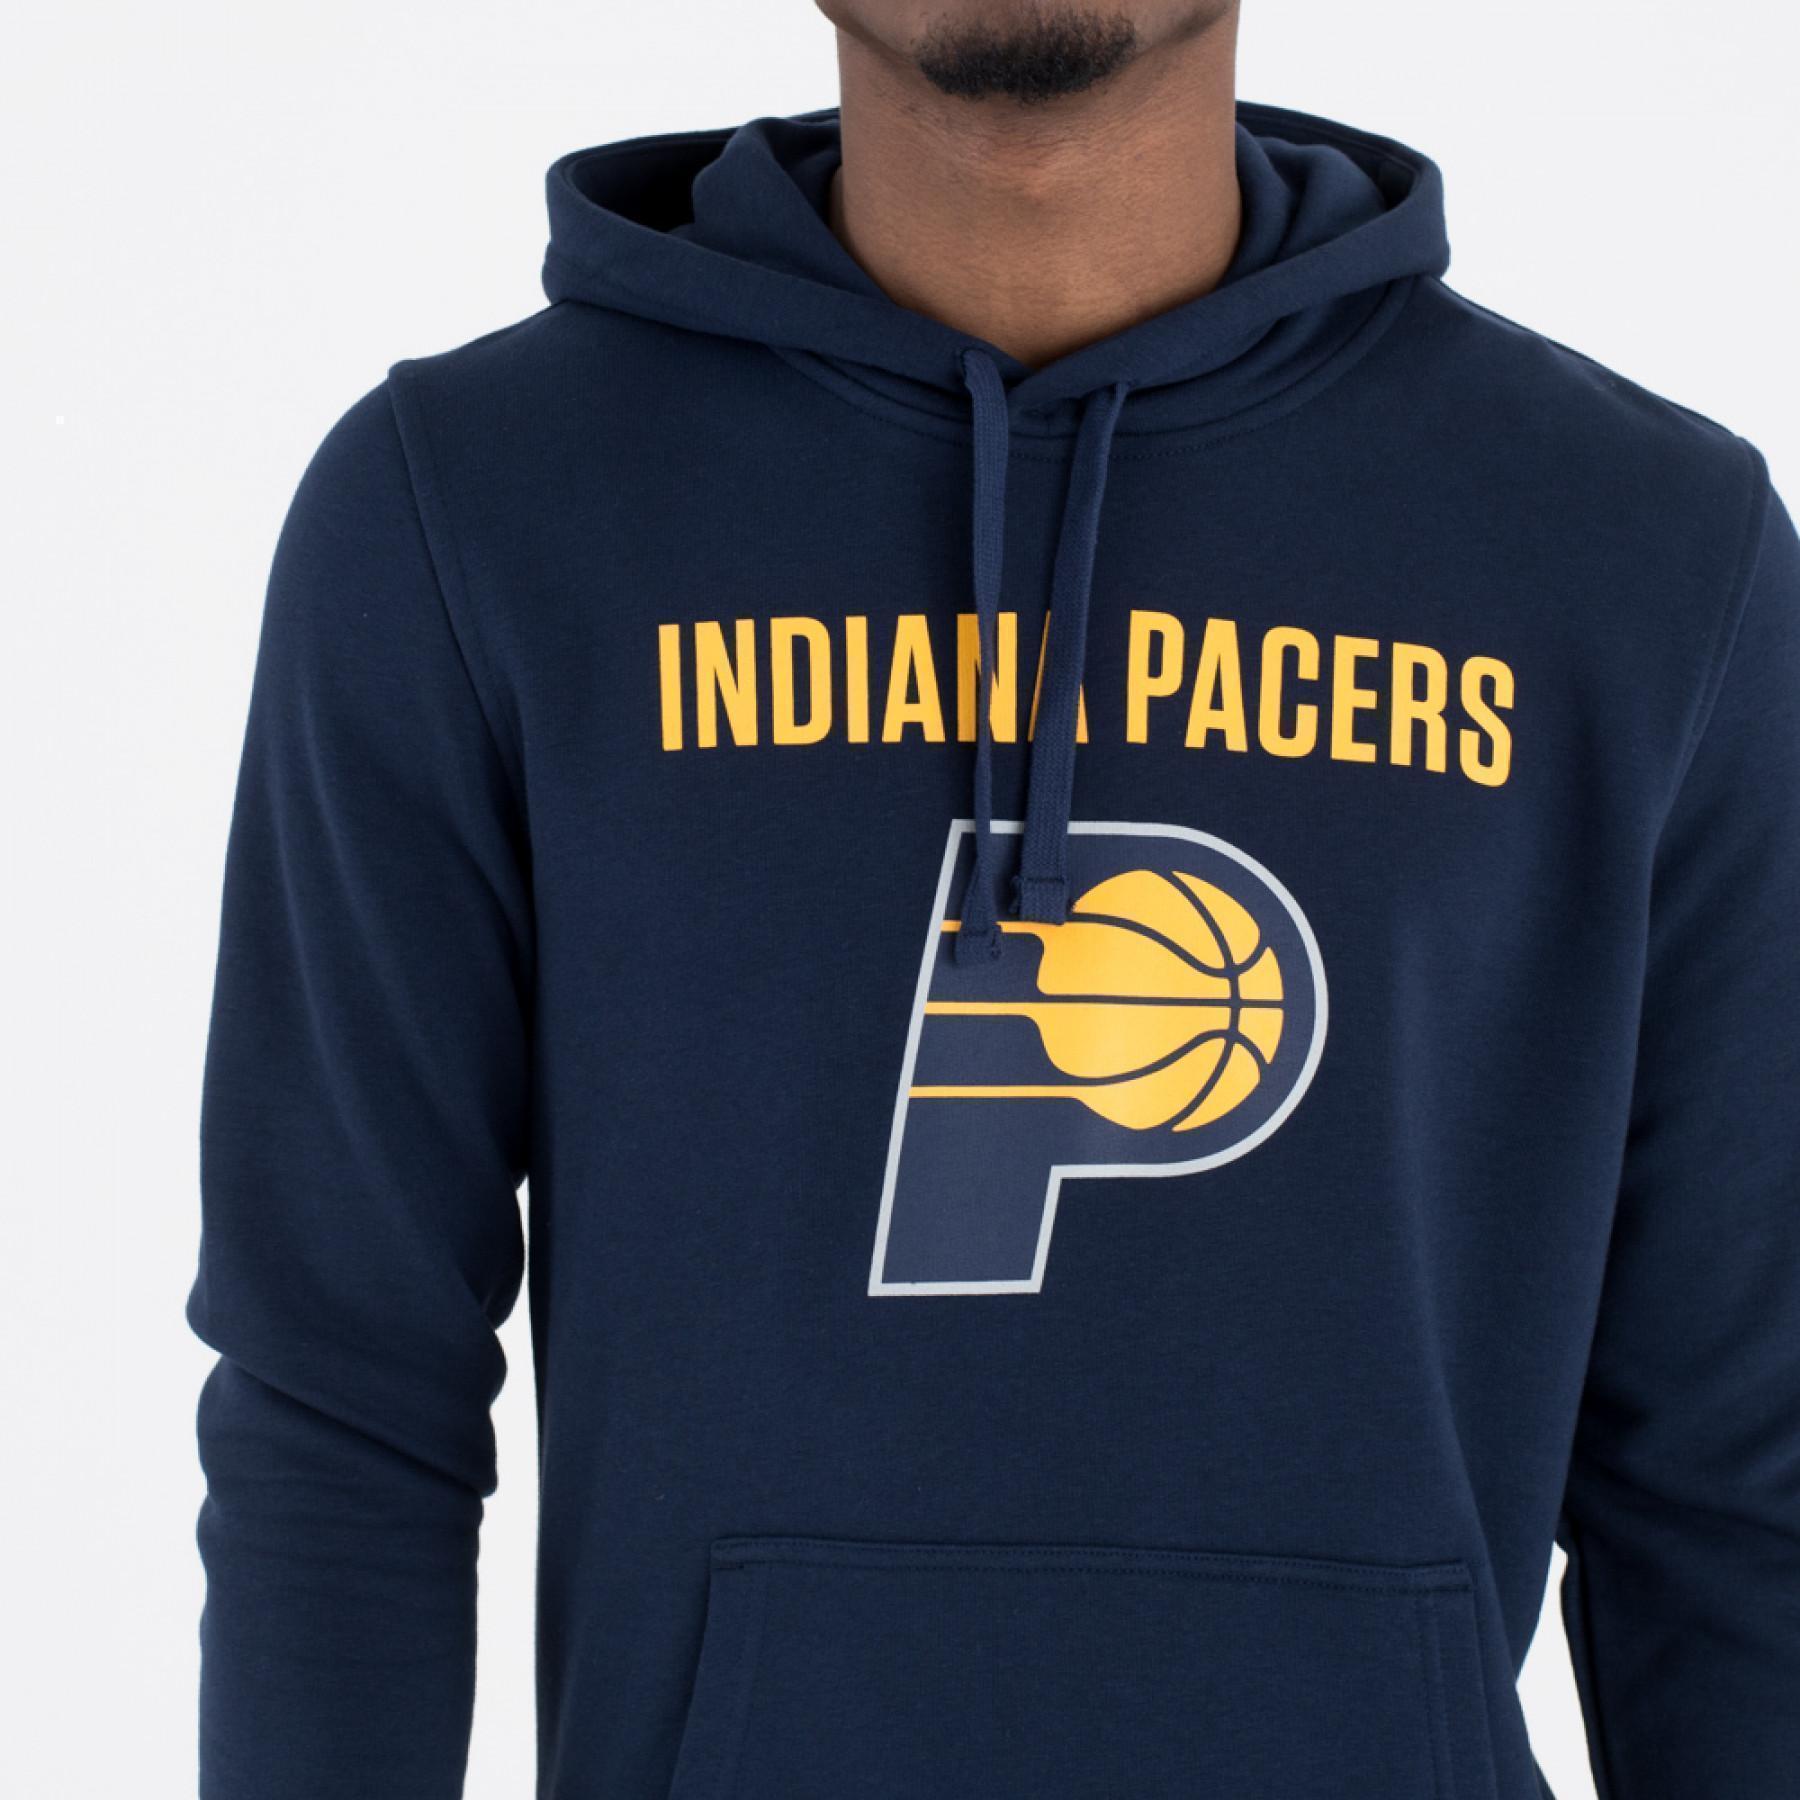 Huvtröjor New Era avec logo de l'équipe Indiana Pacers